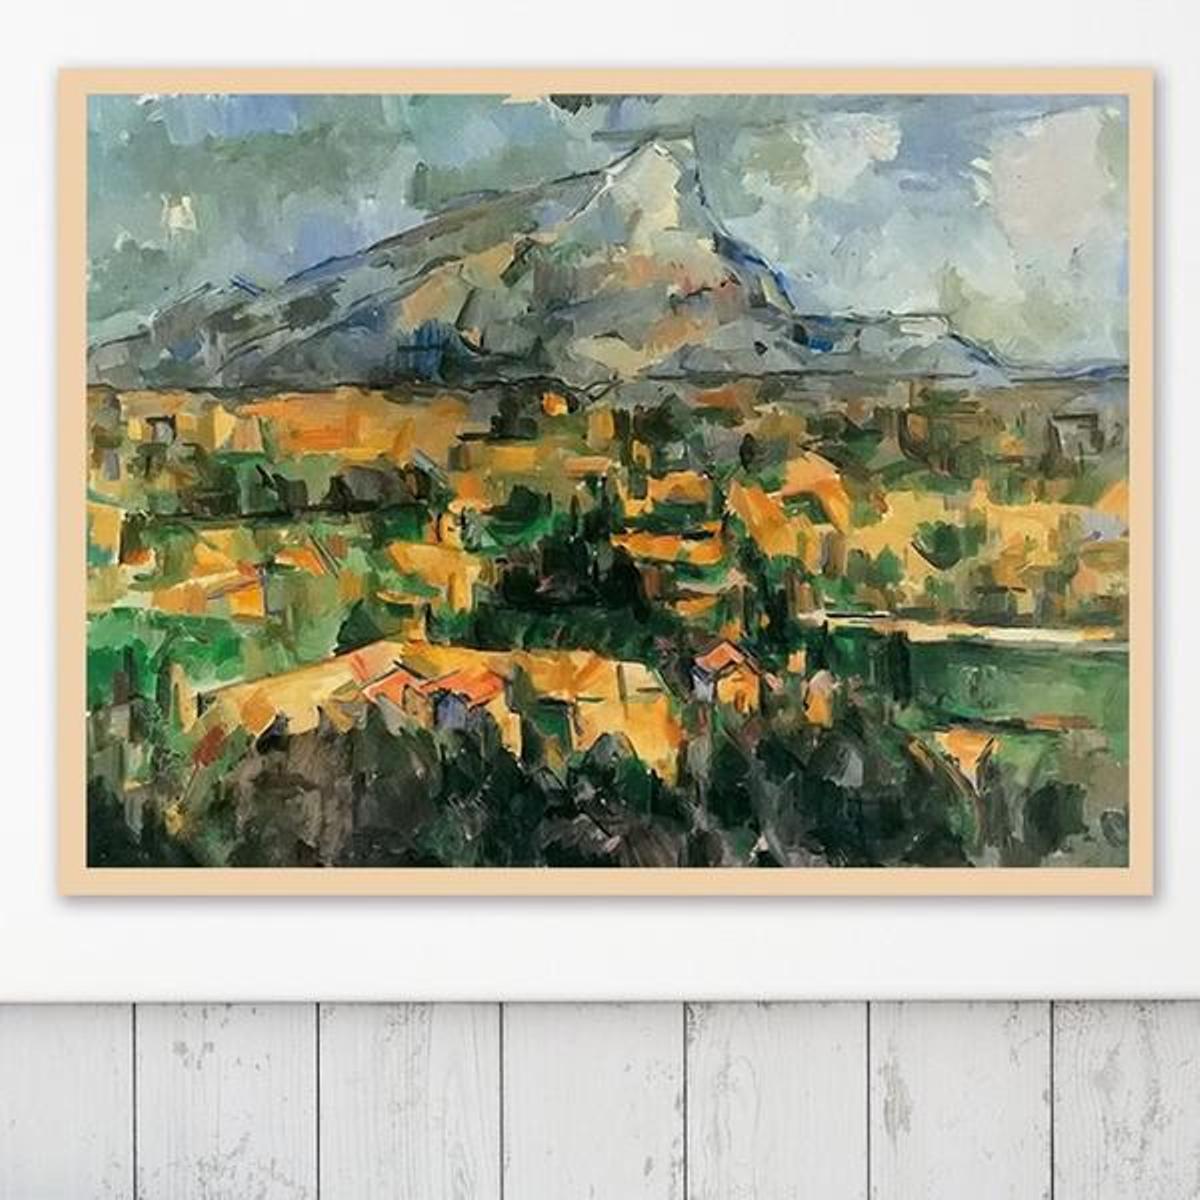 Mont Sainte-Victoire by Paul Cezanne - Van-Go Paint-By-Number Kit